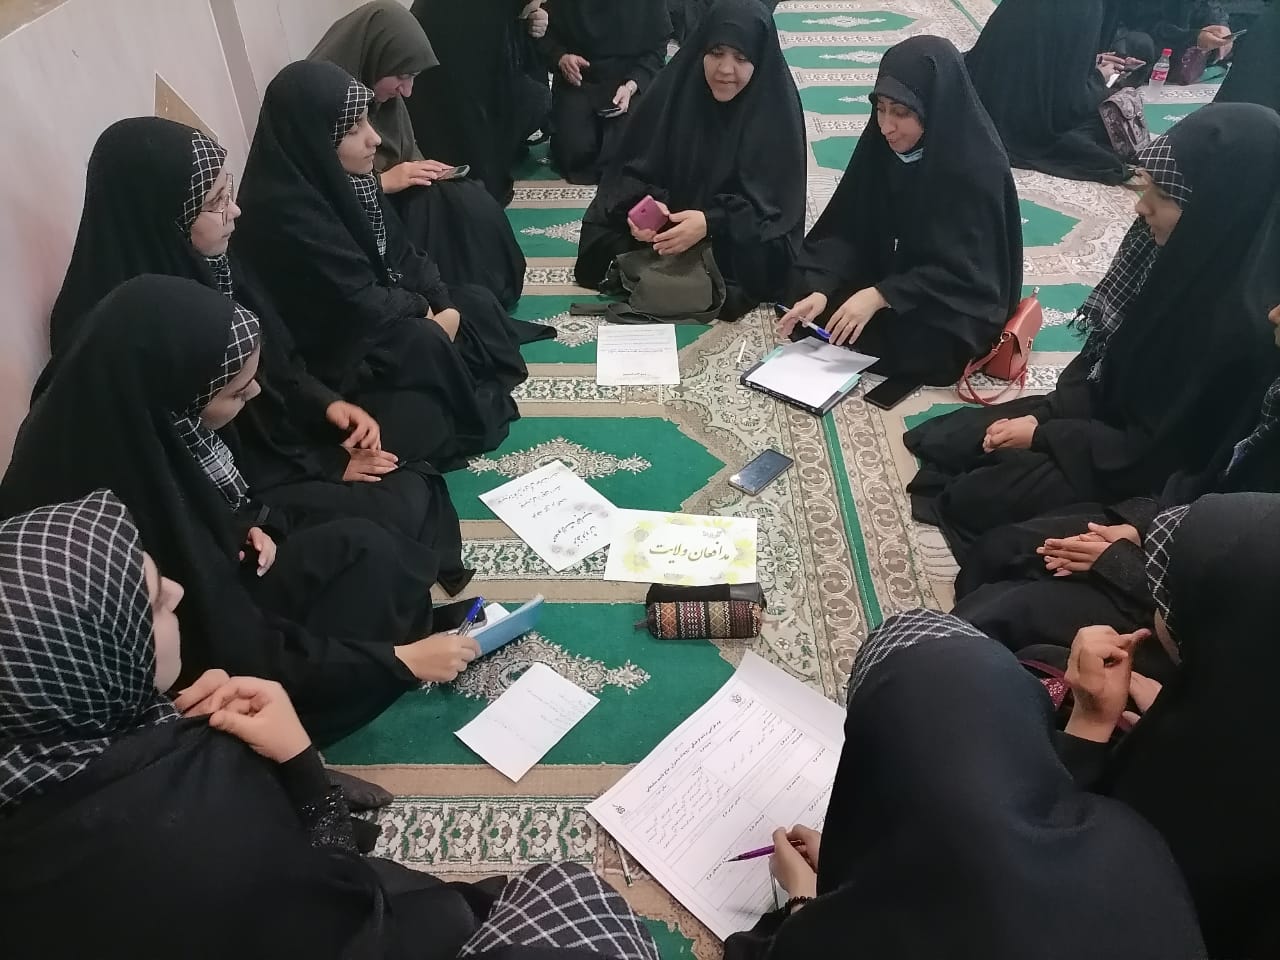 رونمايي از اپليکيشن «مدافعان ولايت» توسط دختران نوجوان مسجدي اسفراين